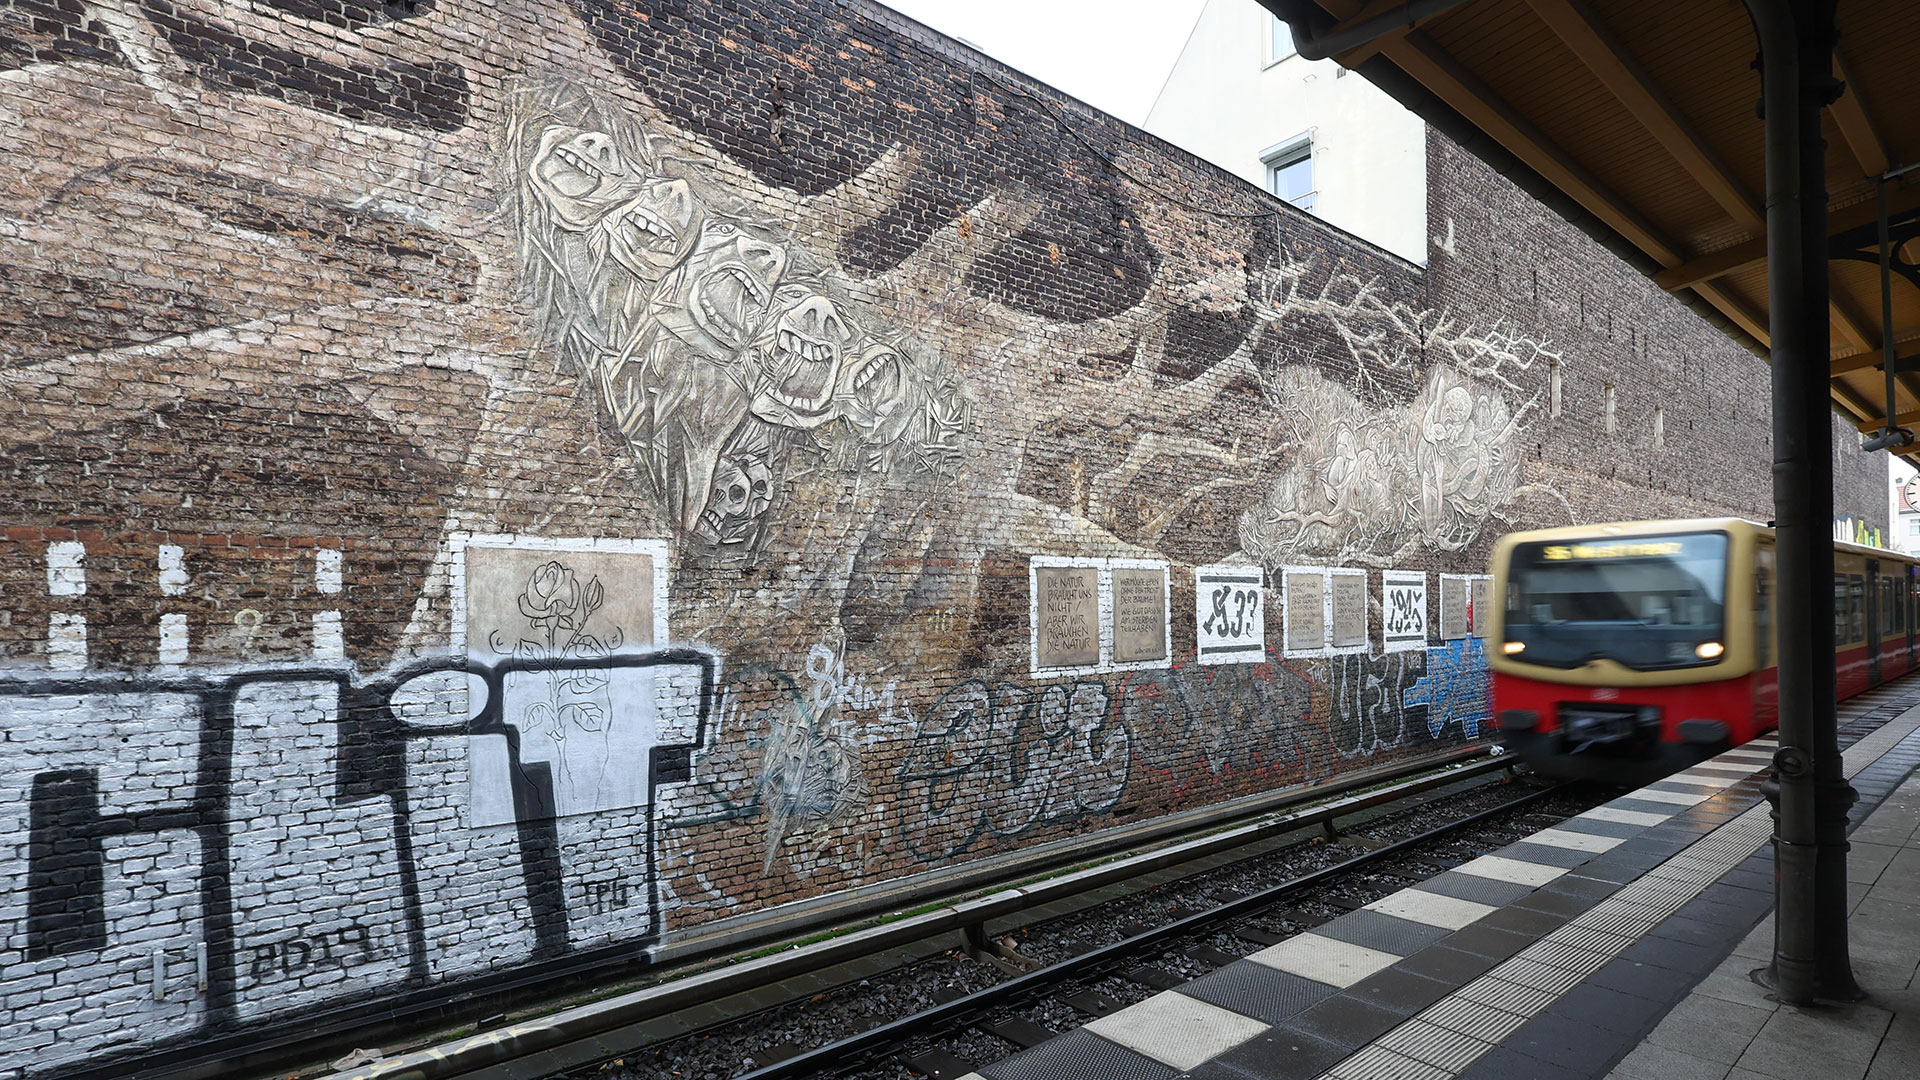 Wandgemälde "Weltbaum 2" am S- Bahnhof Savignyplatz (Bild: dpa/Jörg Carstensen)